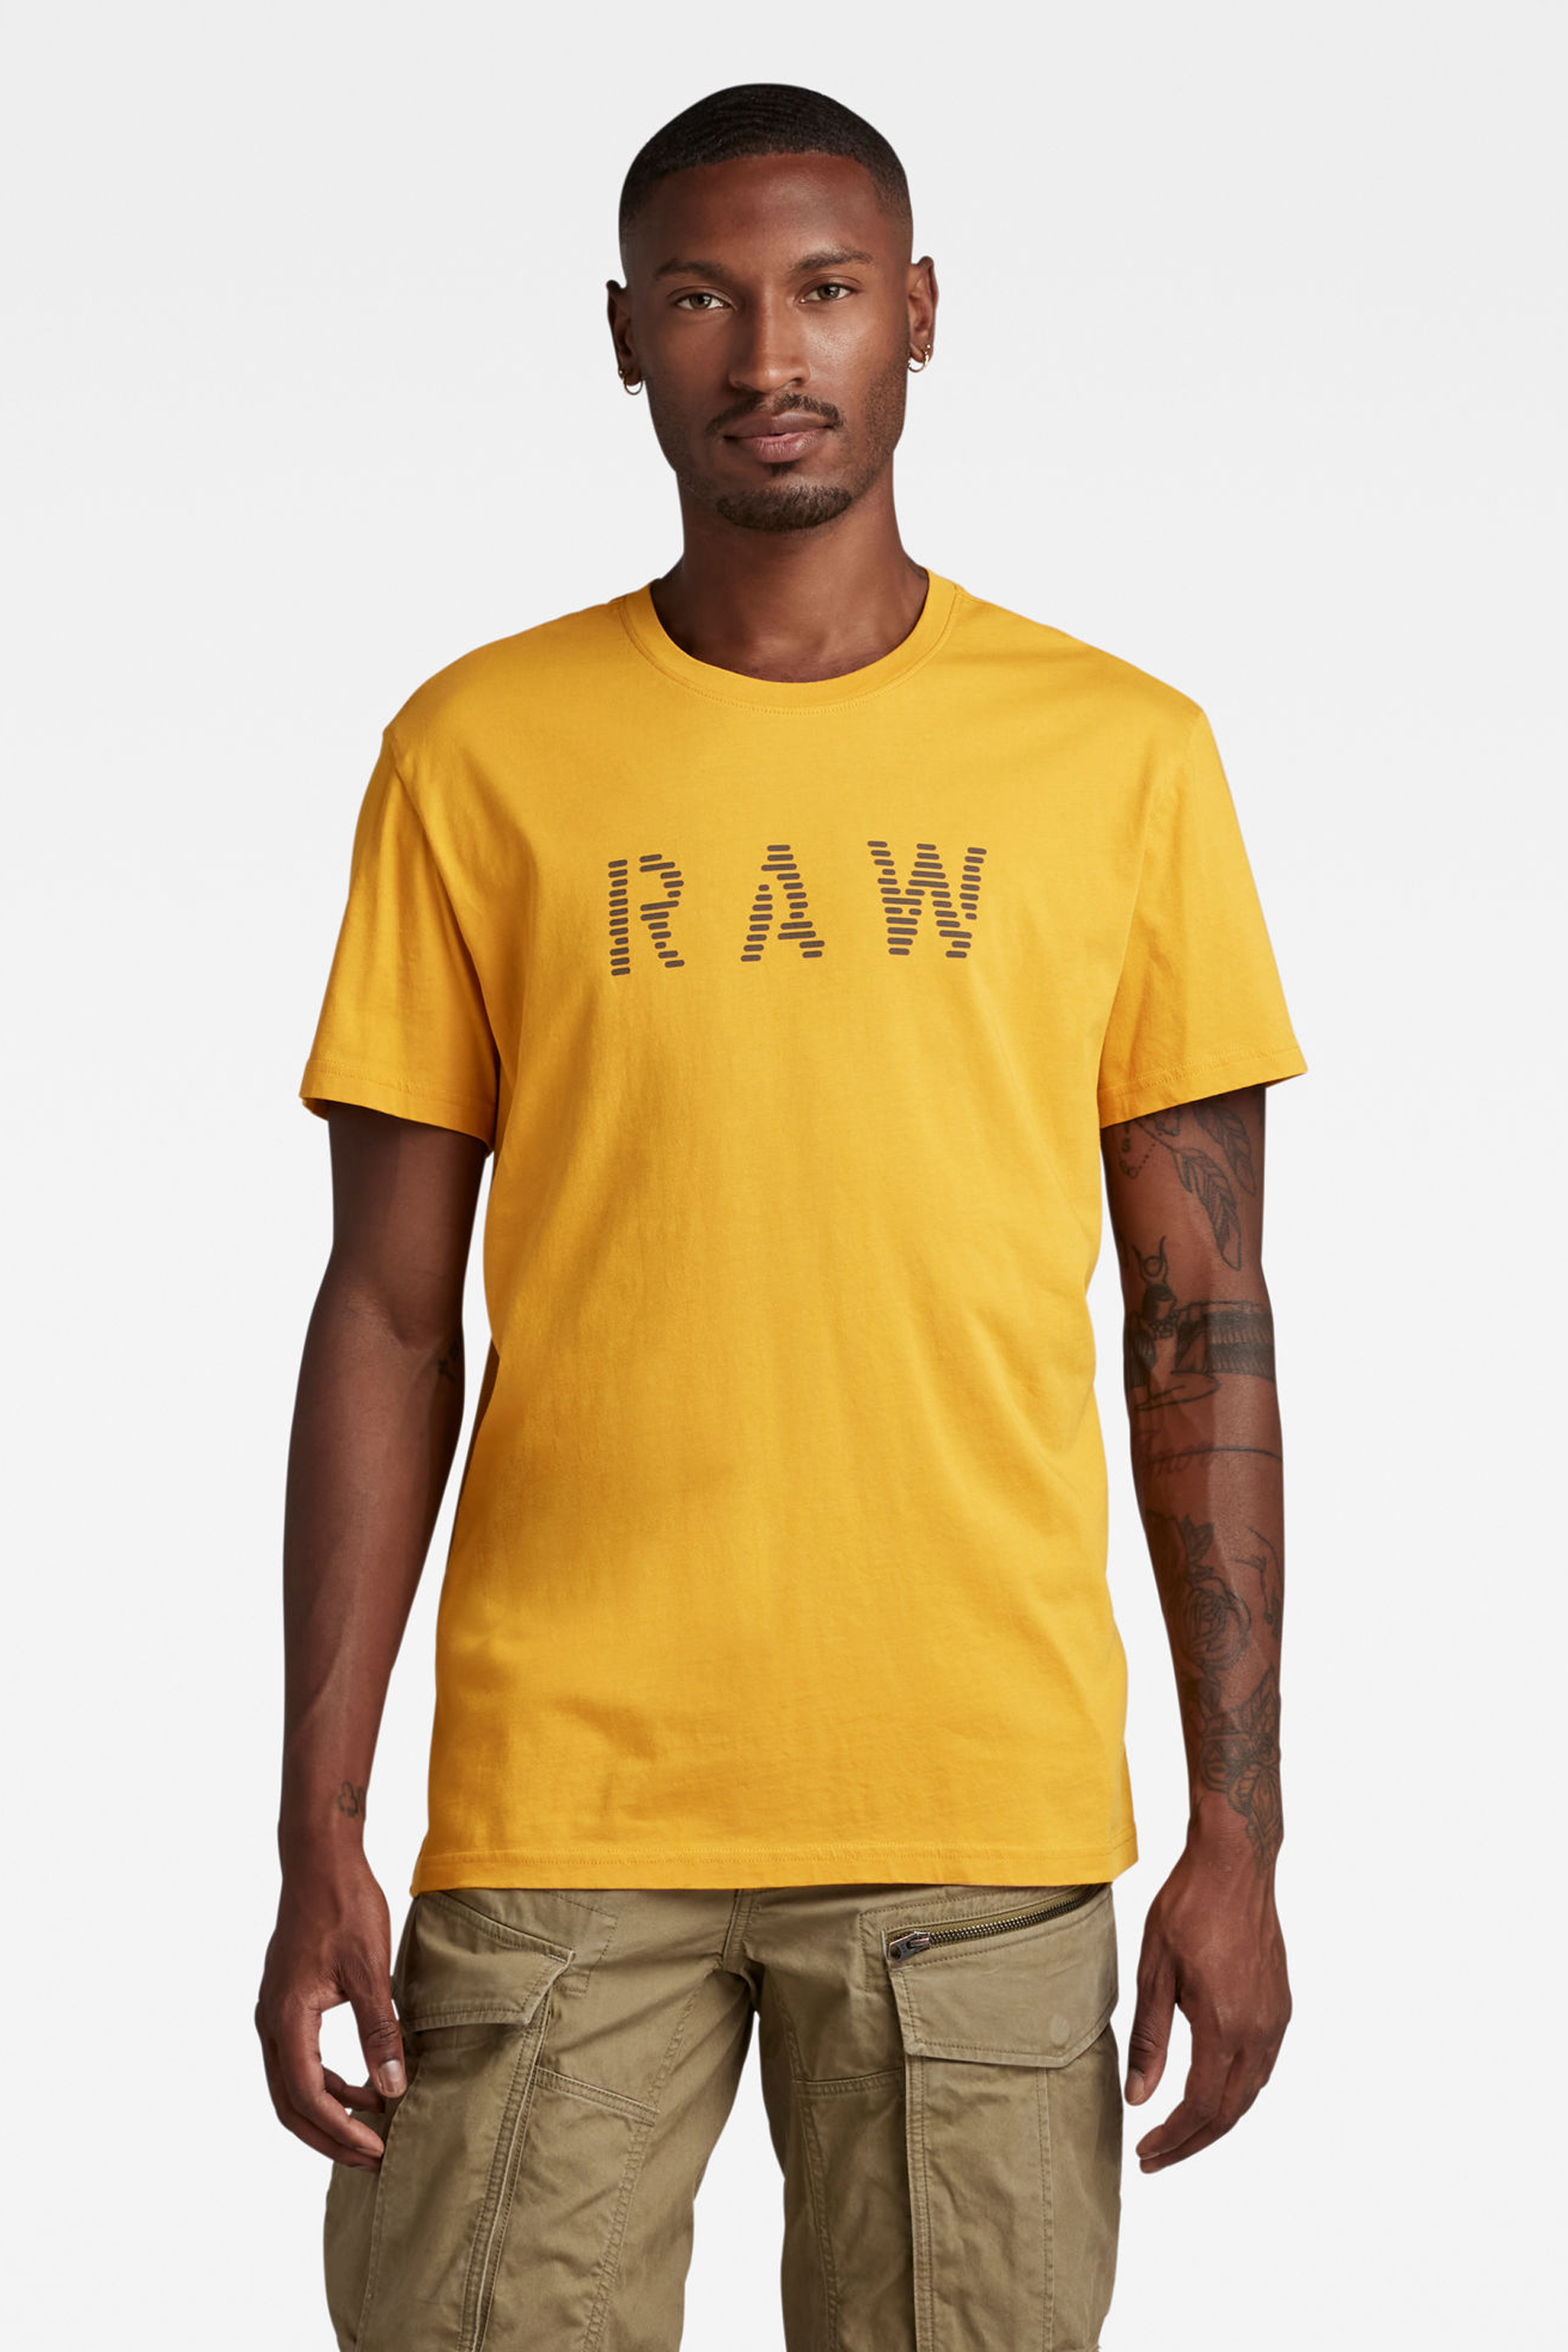 T-Shirt Geel 1213 dull yellow 061 The Fashion Store en Ziffiks®